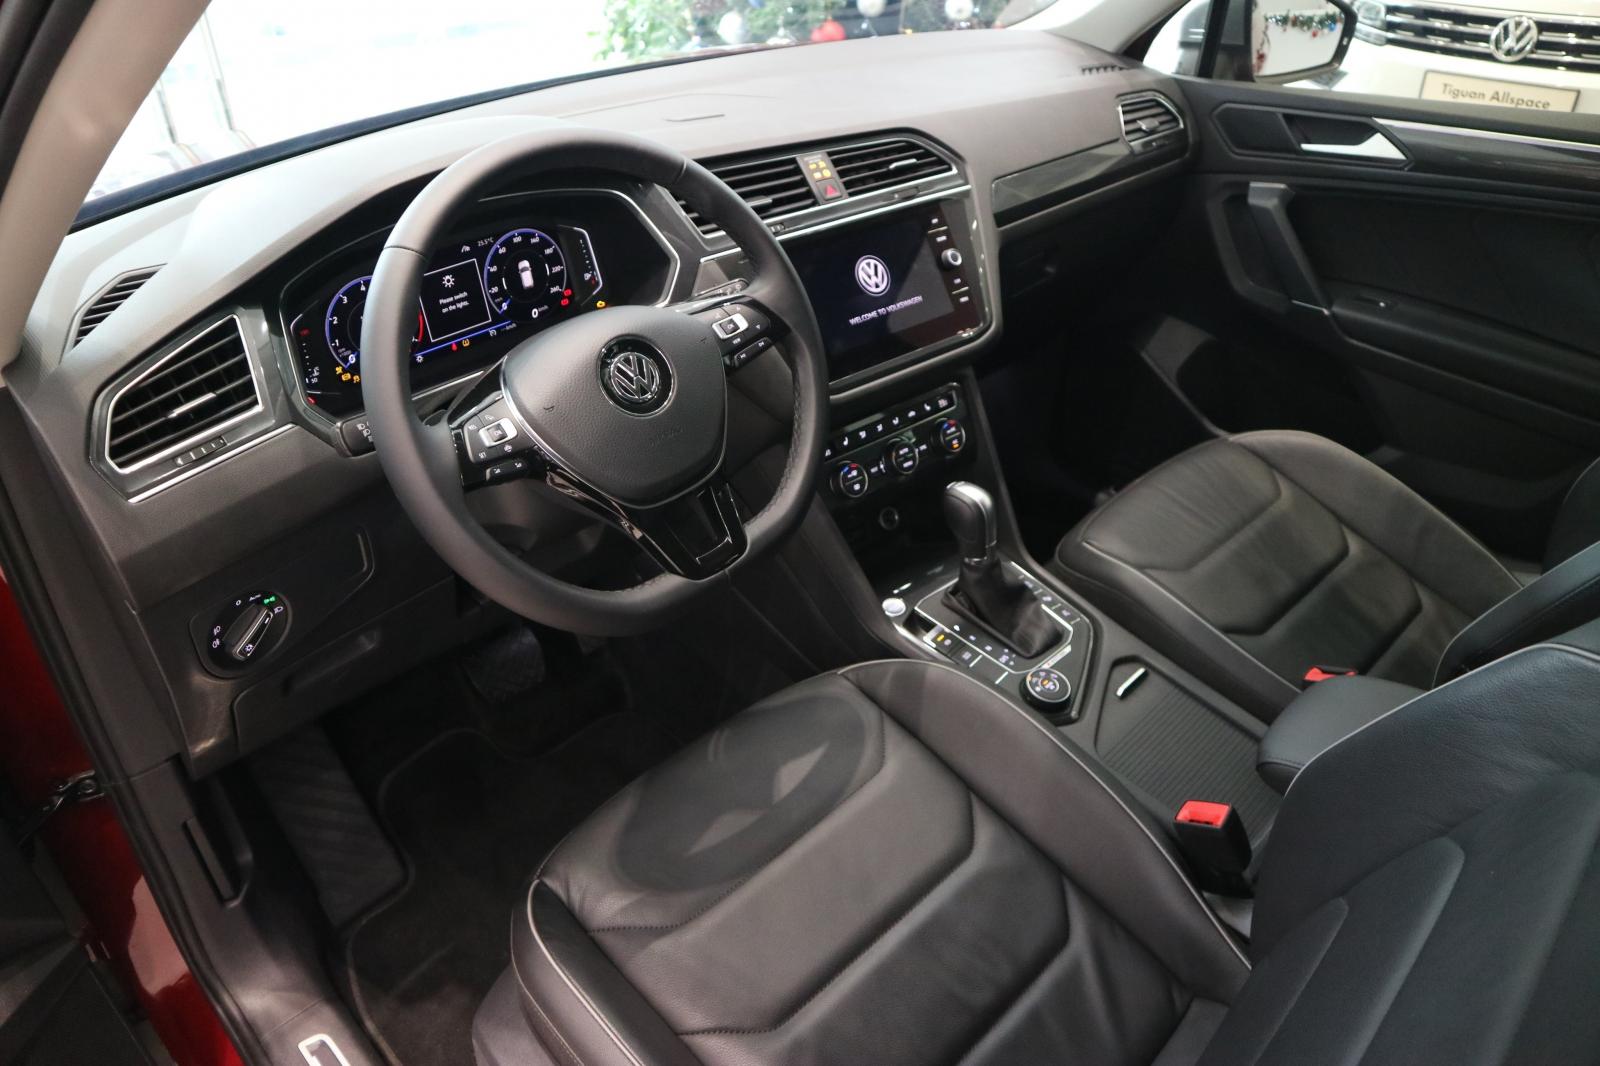 Volkswagen Tiguan Luxury S 2021 - Luxury S đời 2021, màu đỏ, xe nhập - KM 100% thuế trước bạ